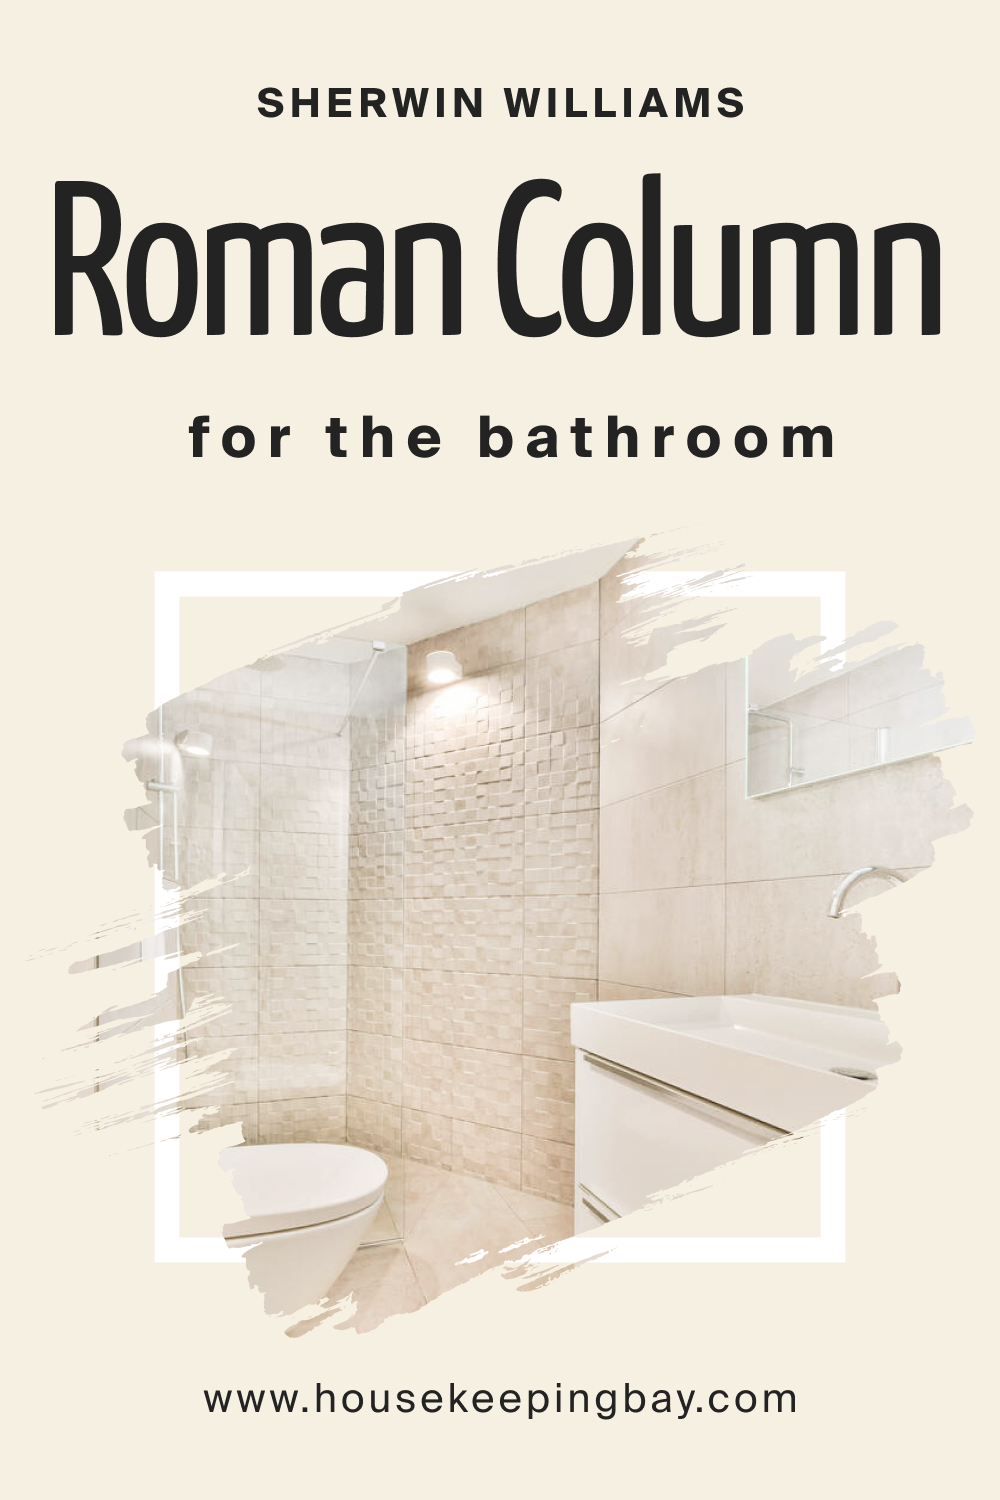 Sherwin Williams. SW Roman Column in the Bathroom